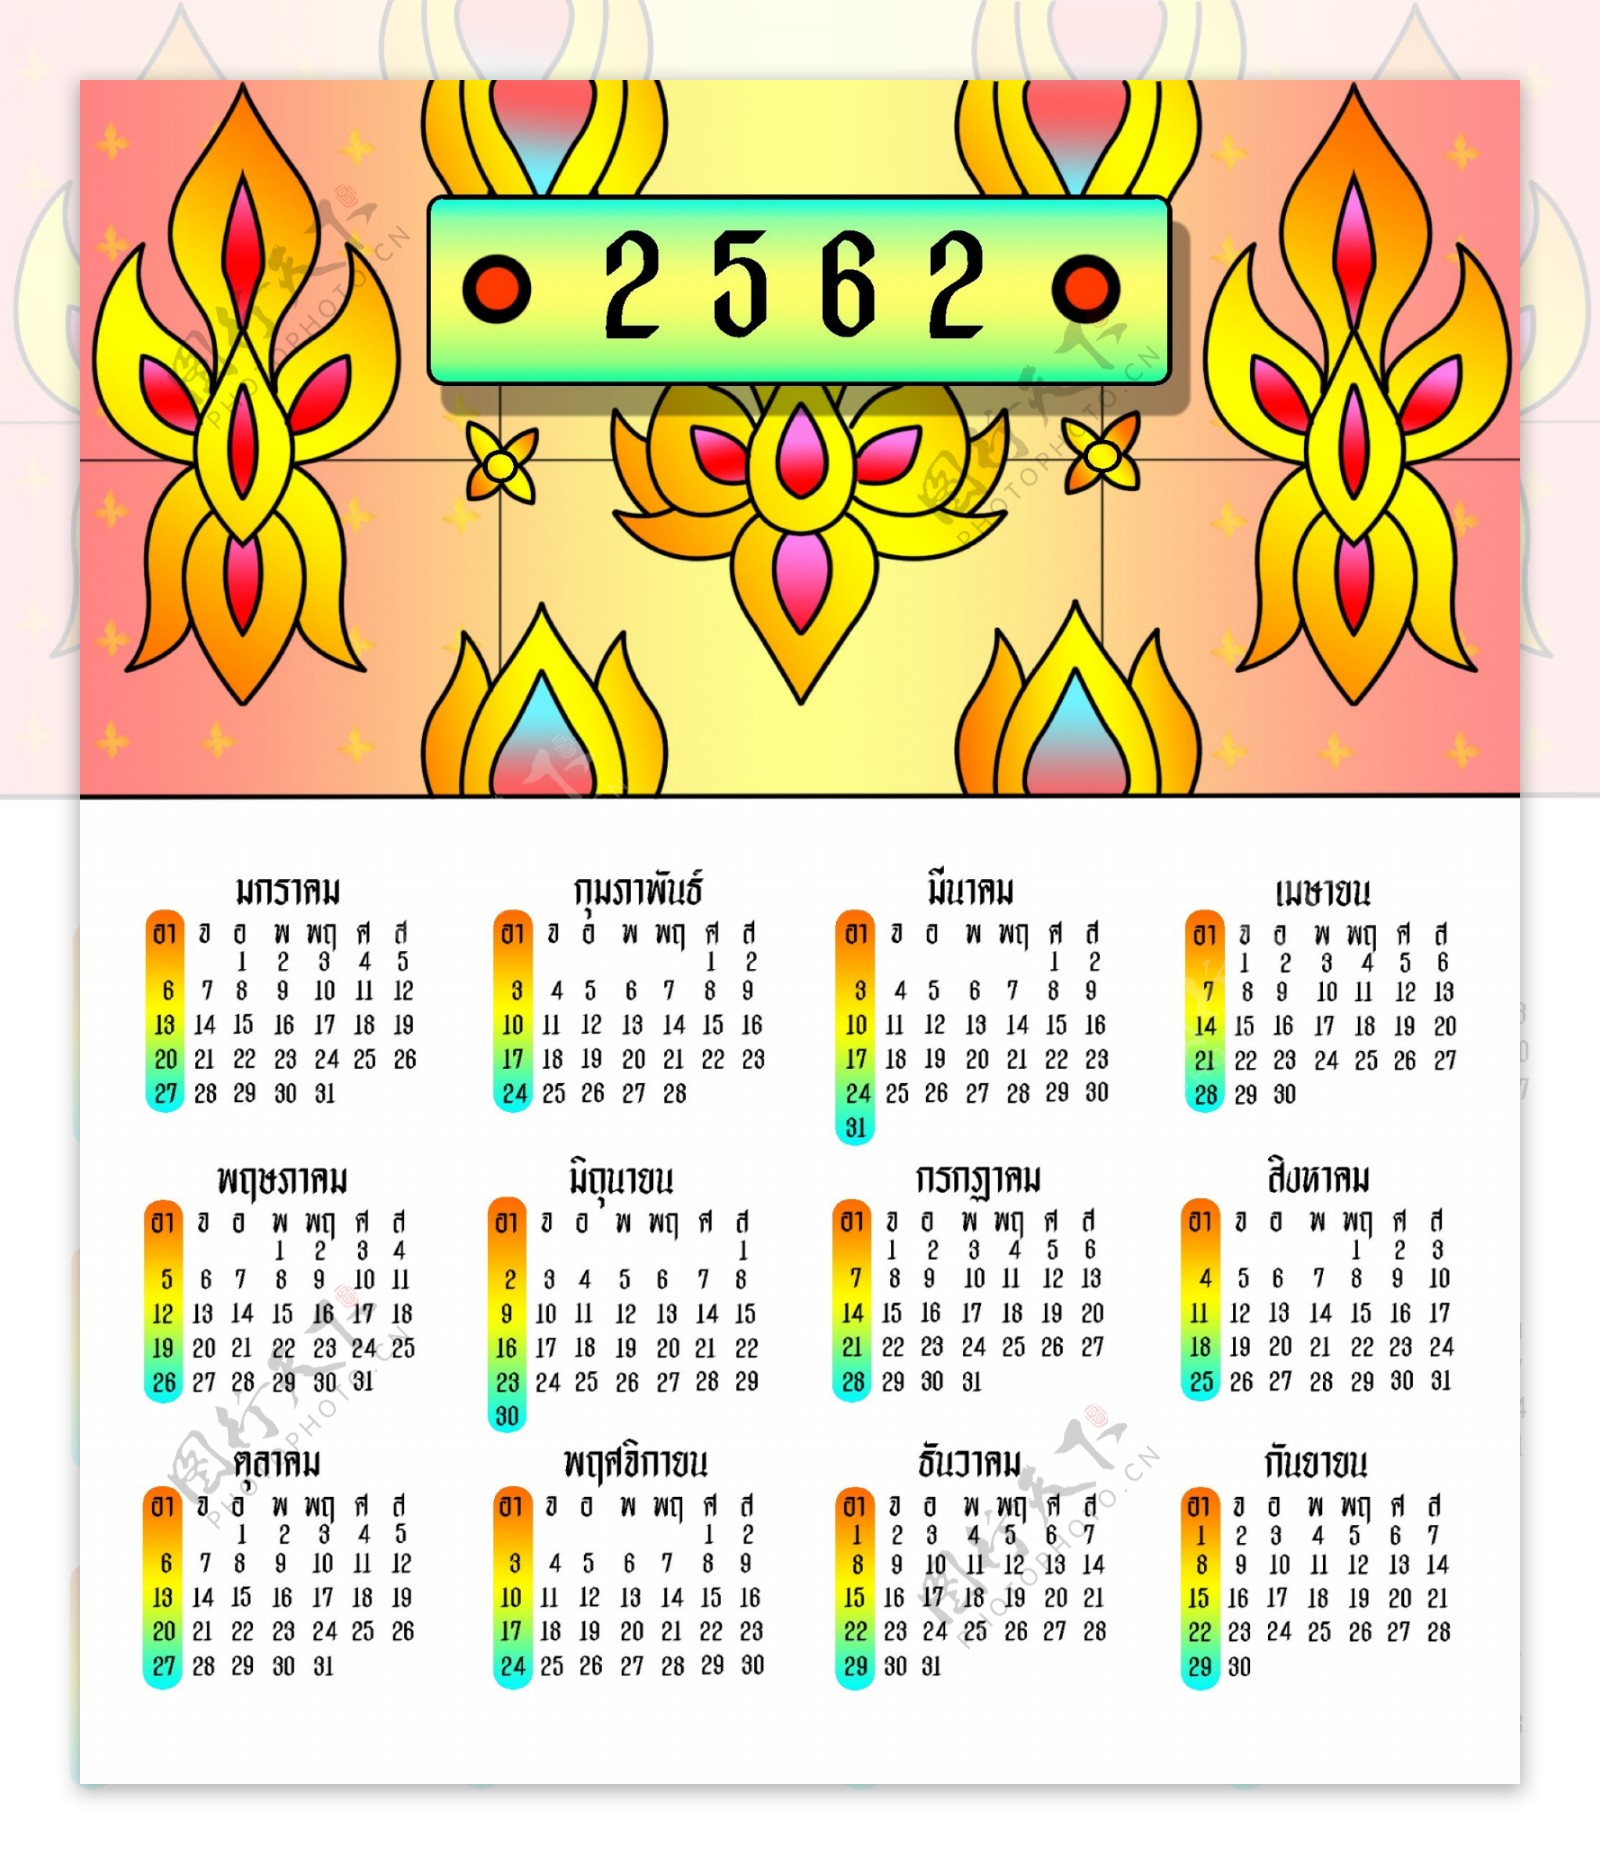 日历2562泰国前黄色条纹为红色